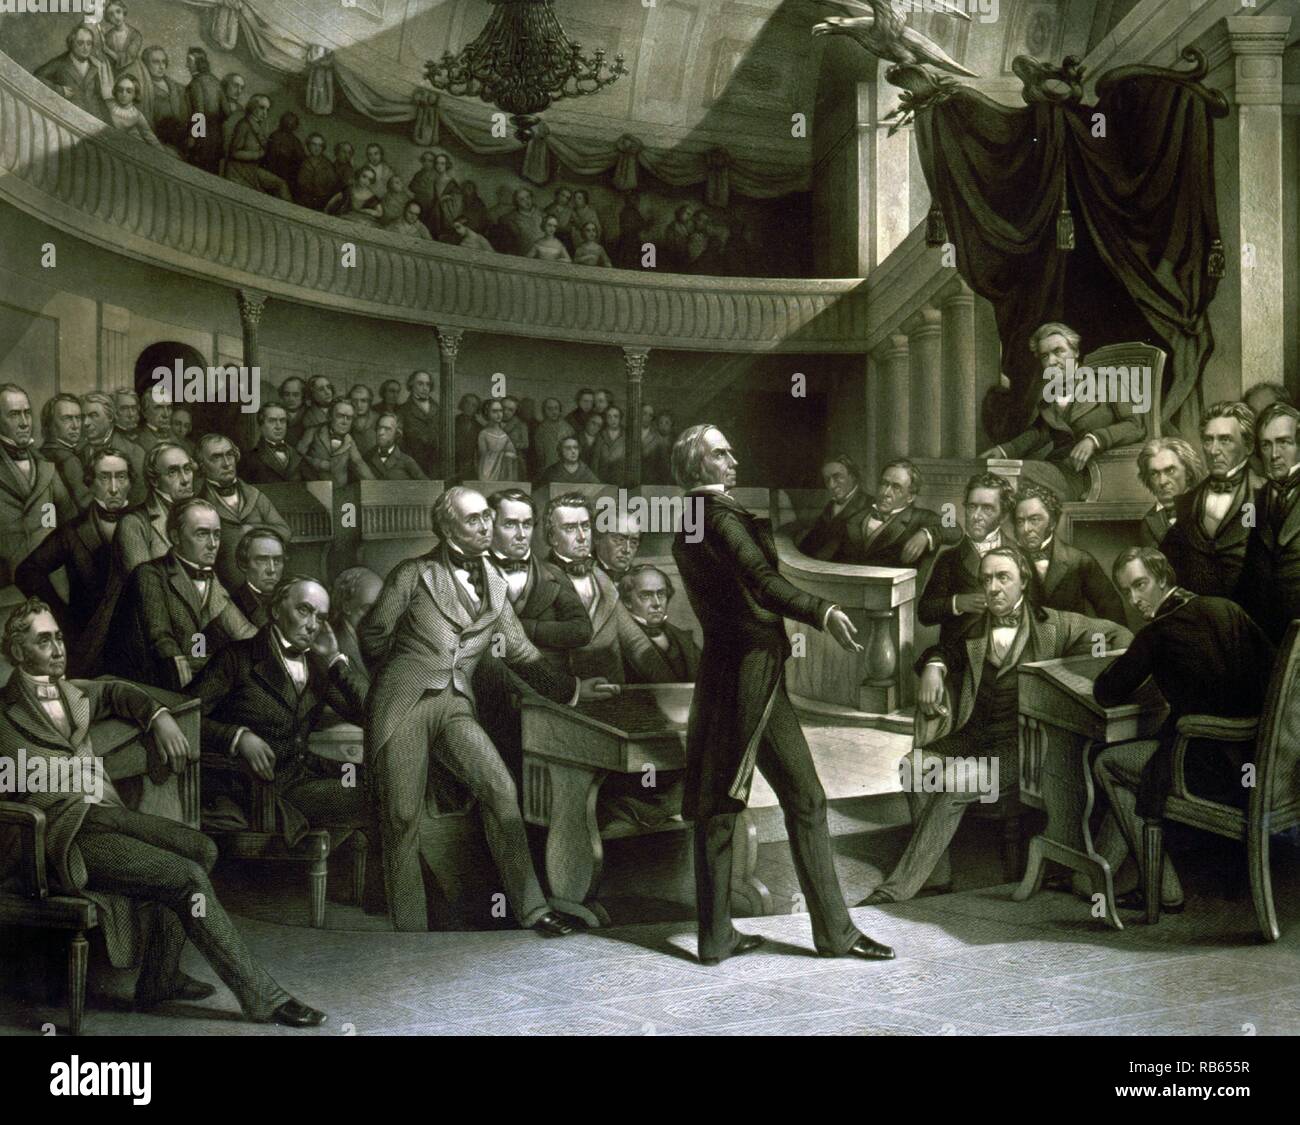 Der Senat der Vereinigten Staaten. Senator Henry Clay sprechen über den Kompromiss von 1850 Im alten Plenarsaal des Senats. Daniel Webster ist links von Ton und John C Calhoun links neben dem Lautsprecher sitzen. Stockfoto